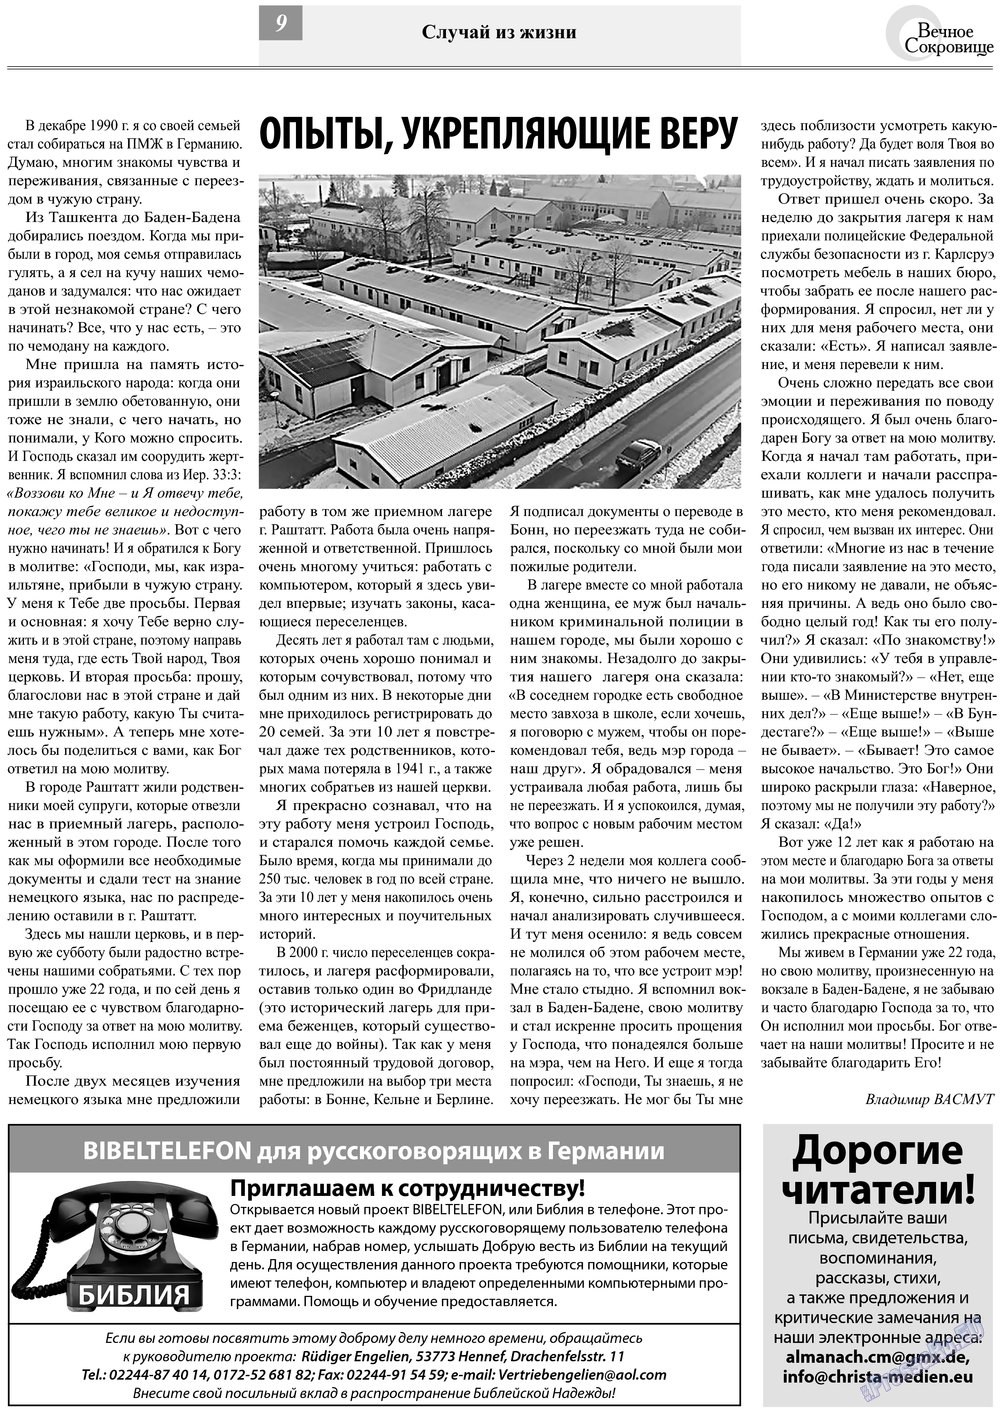 Вечное сокровище, газета. 2013 №2 стр.9